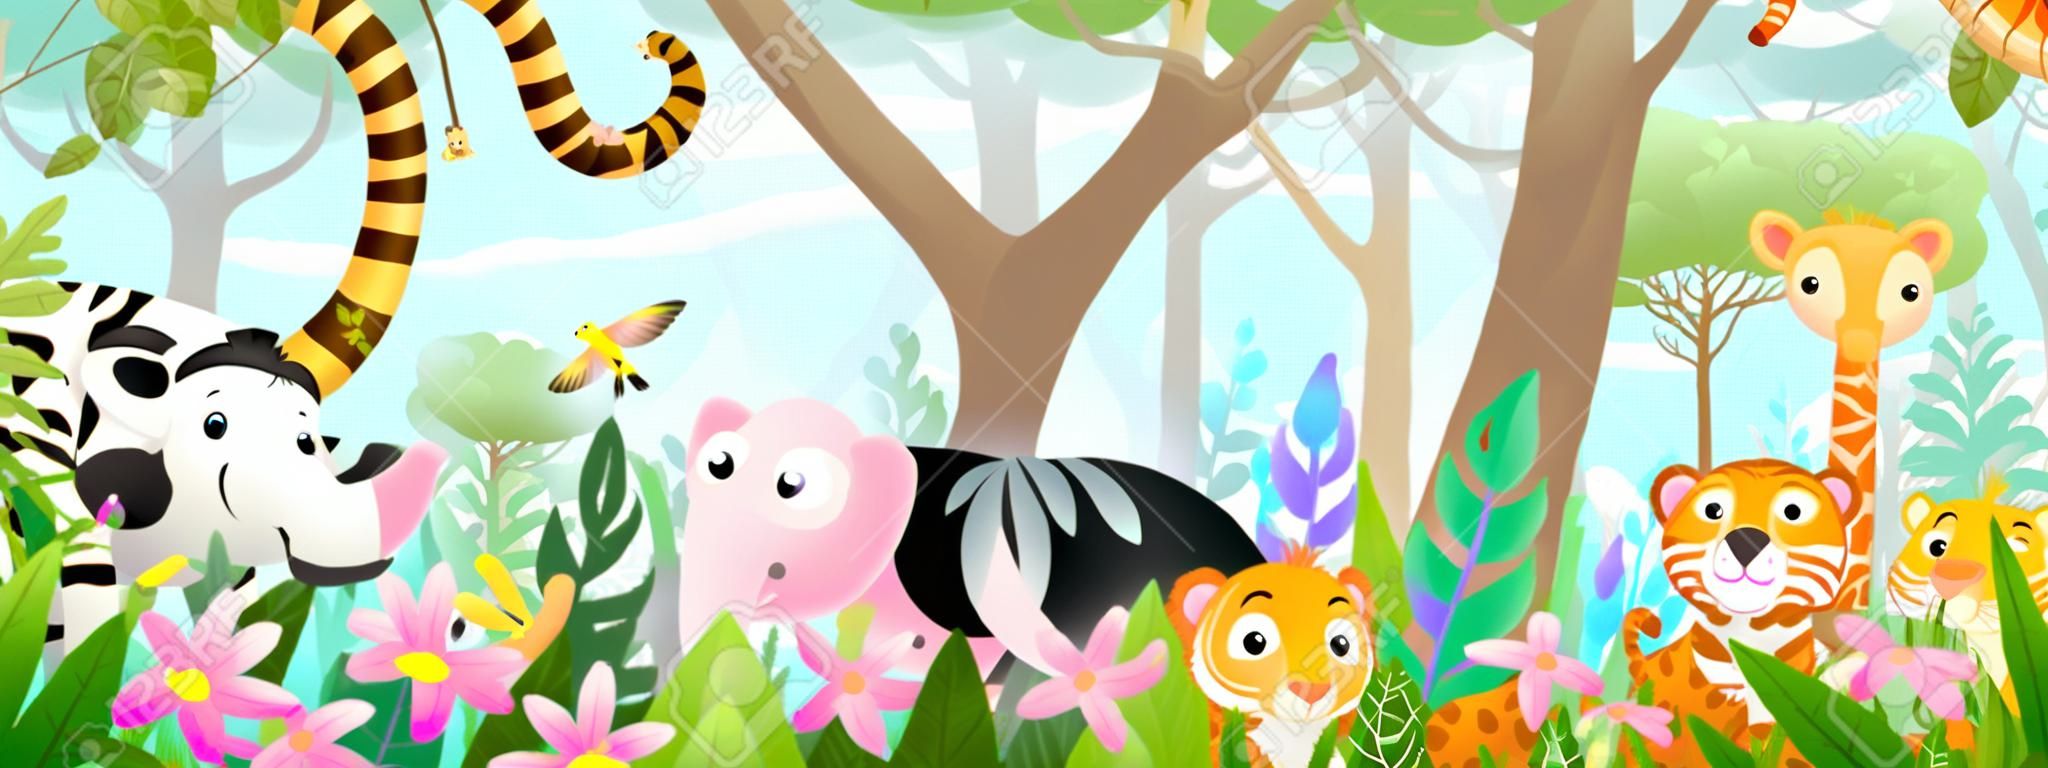 Kindertiere im Dschungel süße Freunde im wilden tropischen Wald. Viele entzückende Safari- oder Zootiere in der Natur. Horizontales Panorama für Kinder und Kinder, Vektorgrafik.